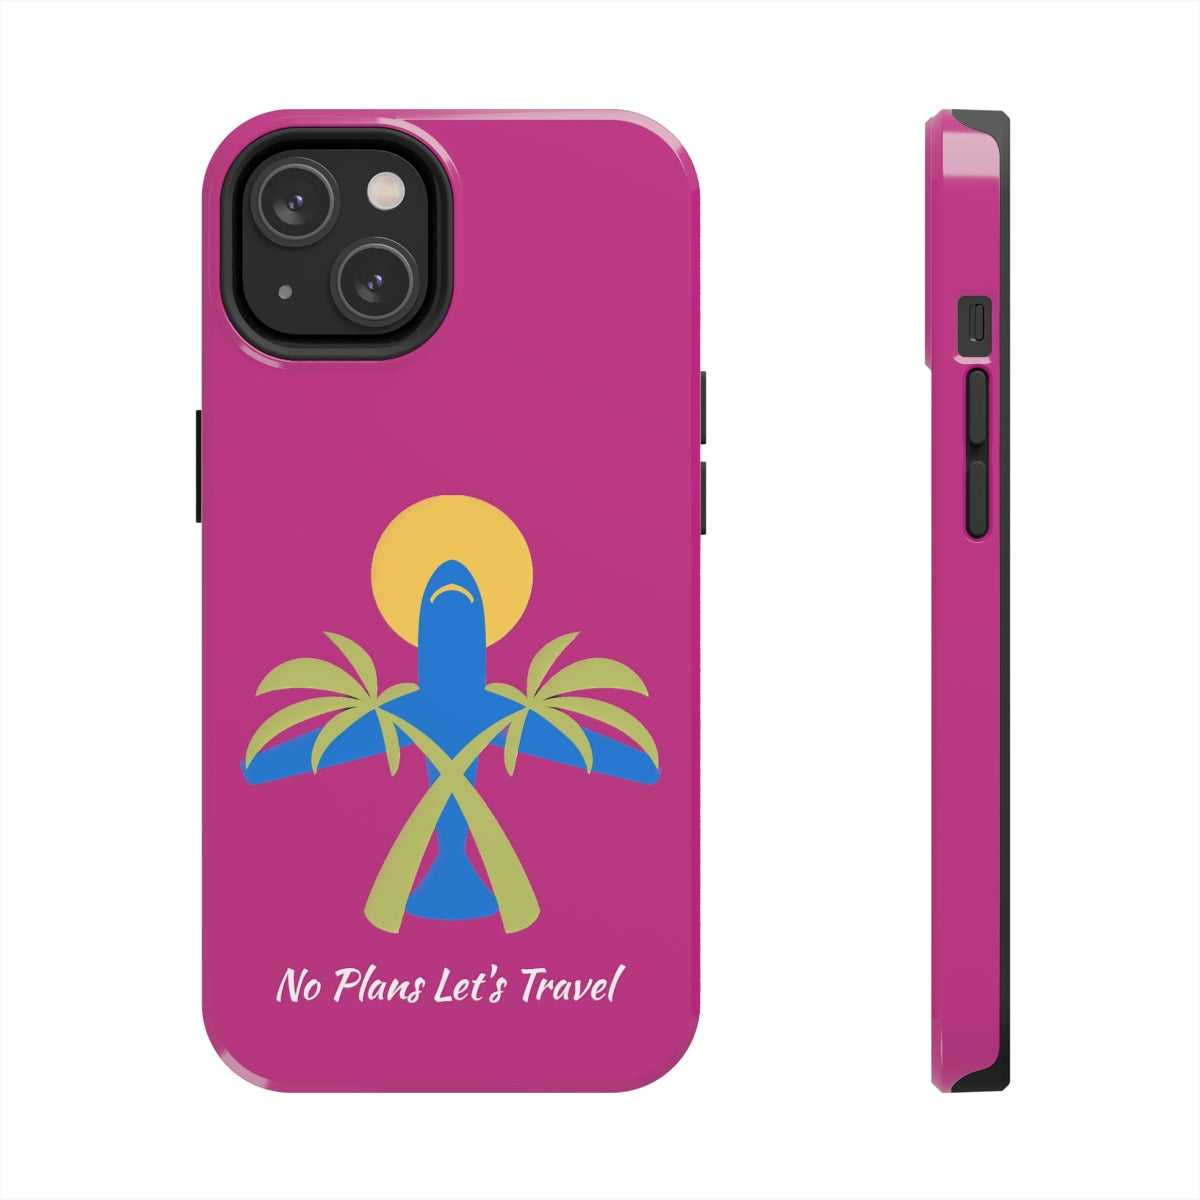 (Pink) No Plans Let's Travel Tough Phone Cases